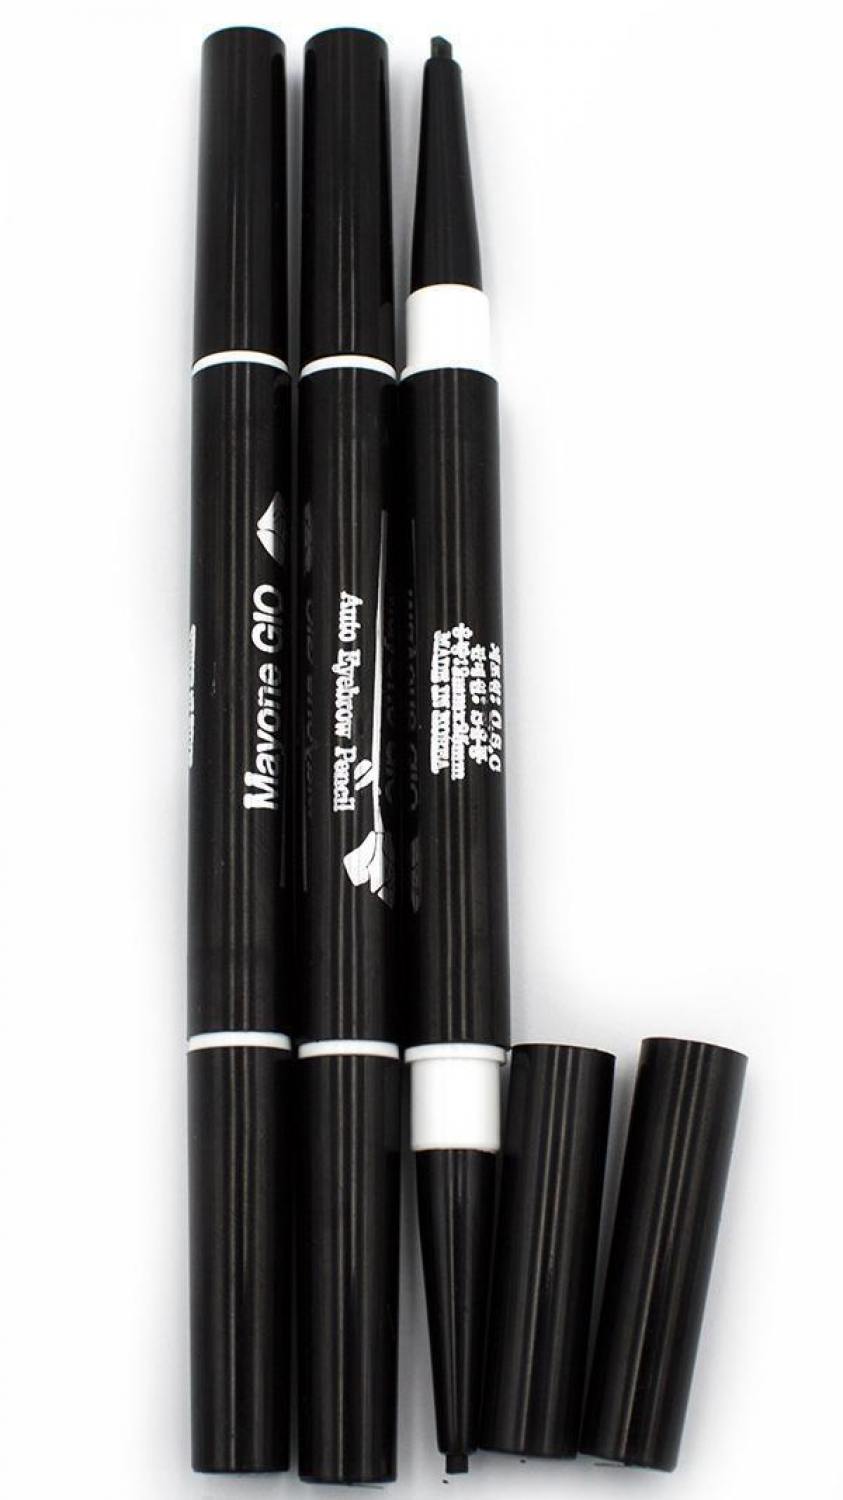 Автоматический двухсторонний карандаш для глаз и бровей Mayone Gio Eyebrow pencil. Артикул 021100048